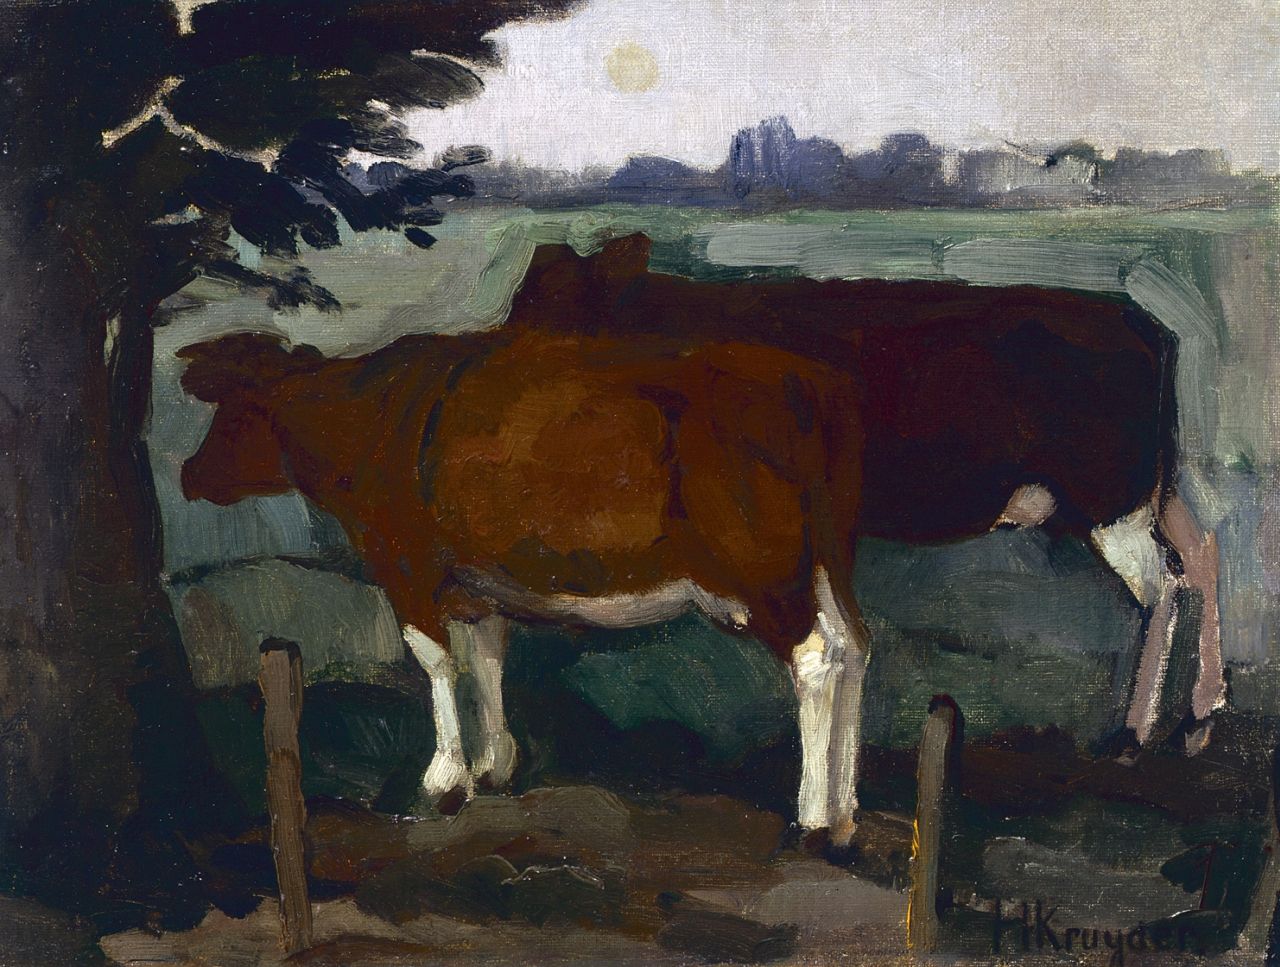 Kruyder H.J.  | 'Herman' Justus Kruyder, Cows in a landscape, Öl auf Leinwand 29,8 x 39,2 cm, signed l.r.